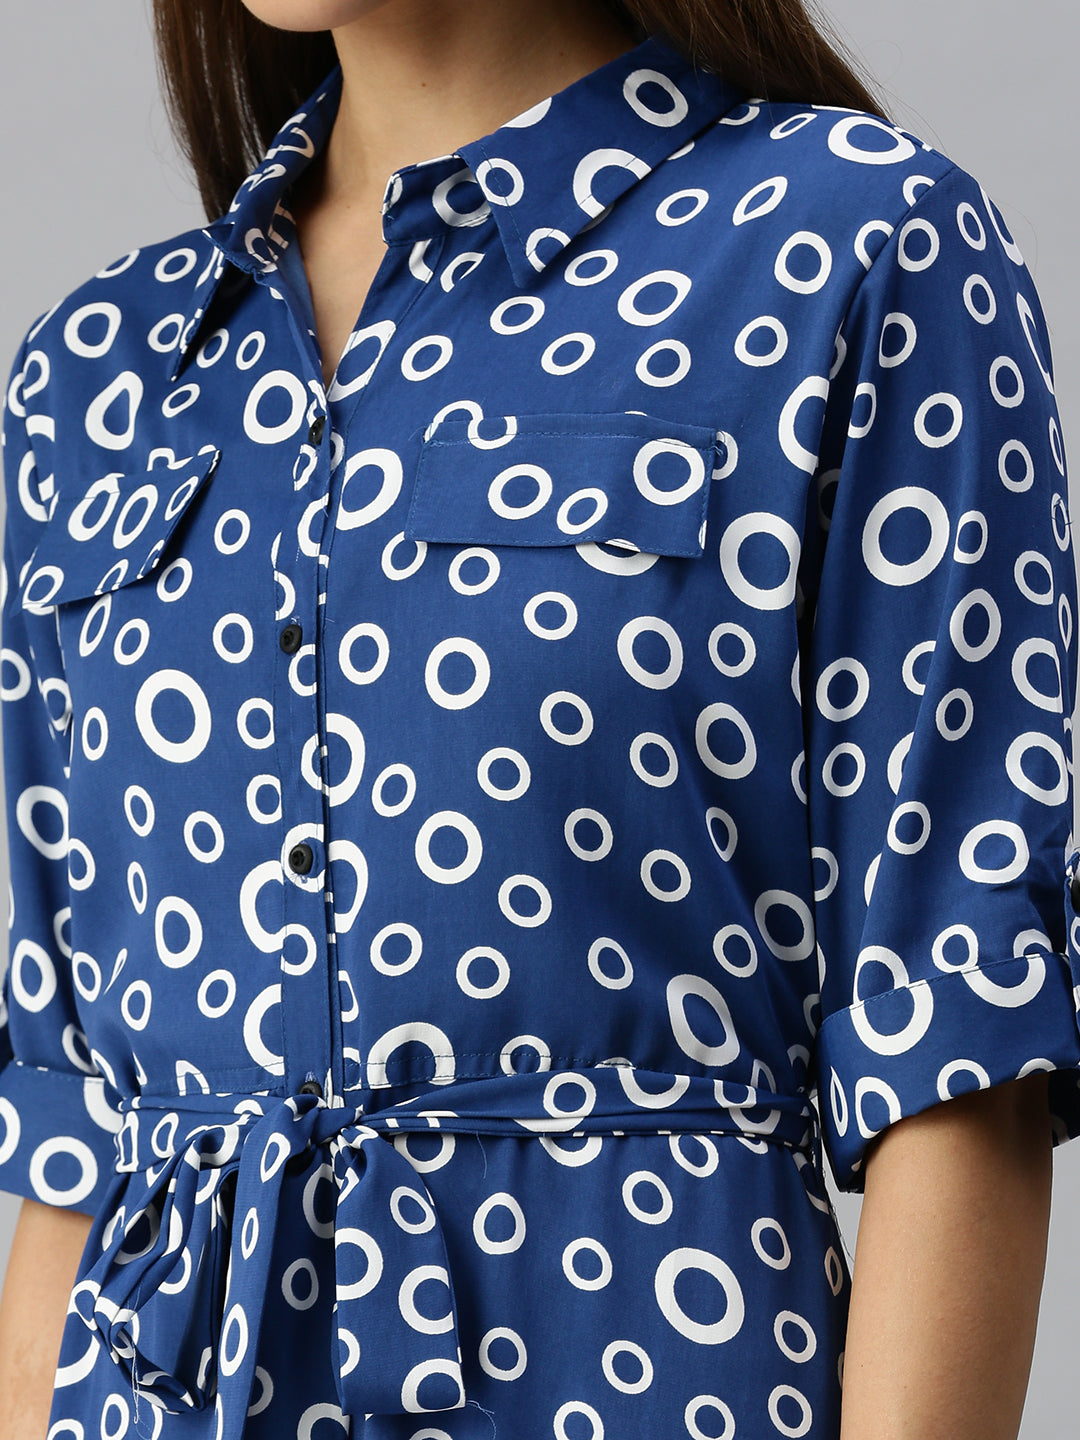 Women's Blue Printed Shirt Dress